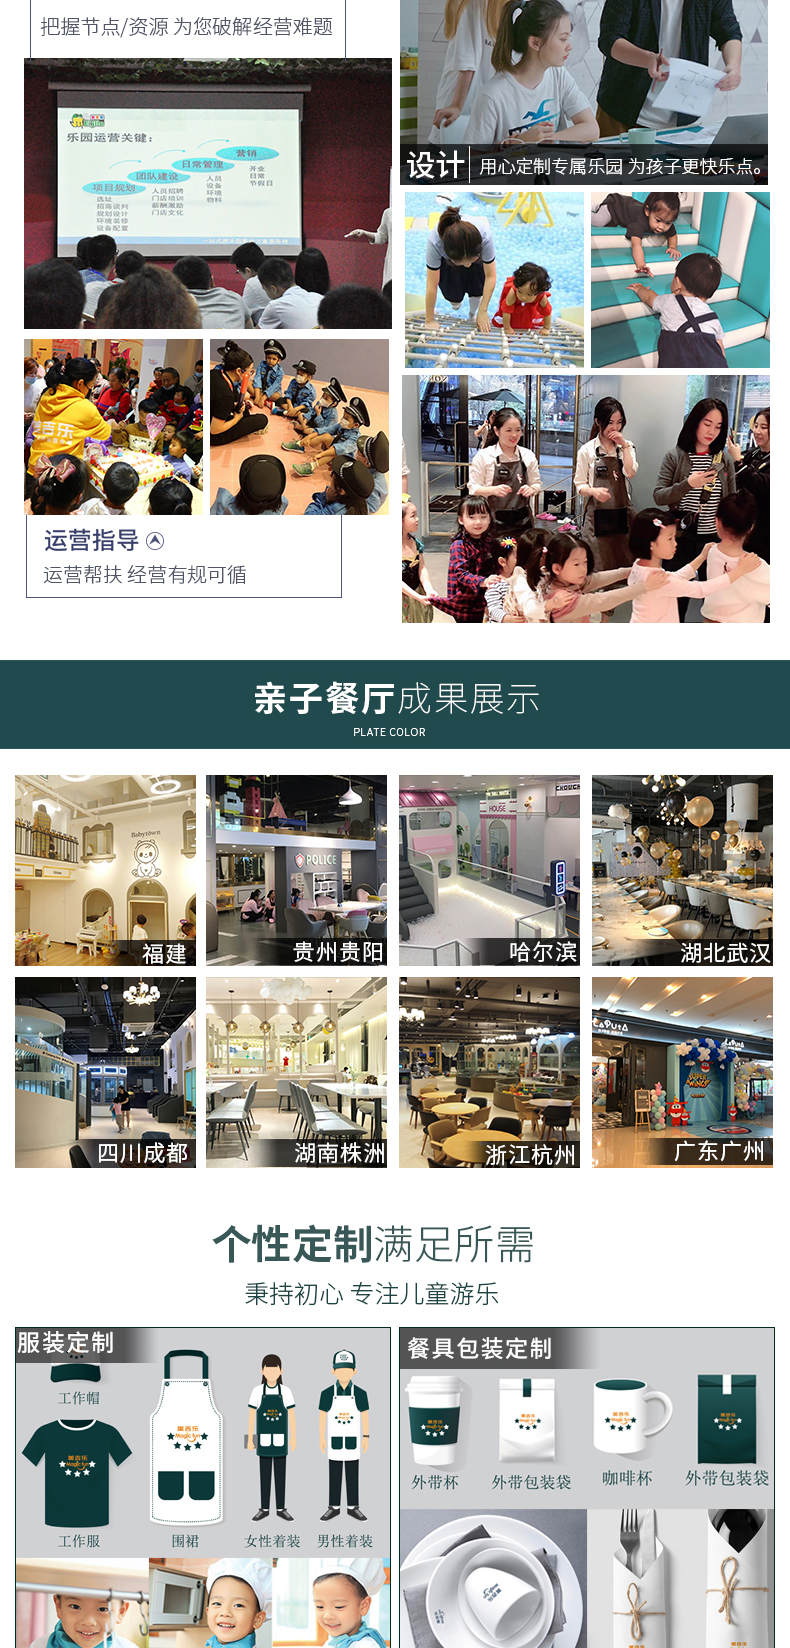 武汉游乐场室内设备 淘气堡儿童乐园 大型亲子餐厅 19